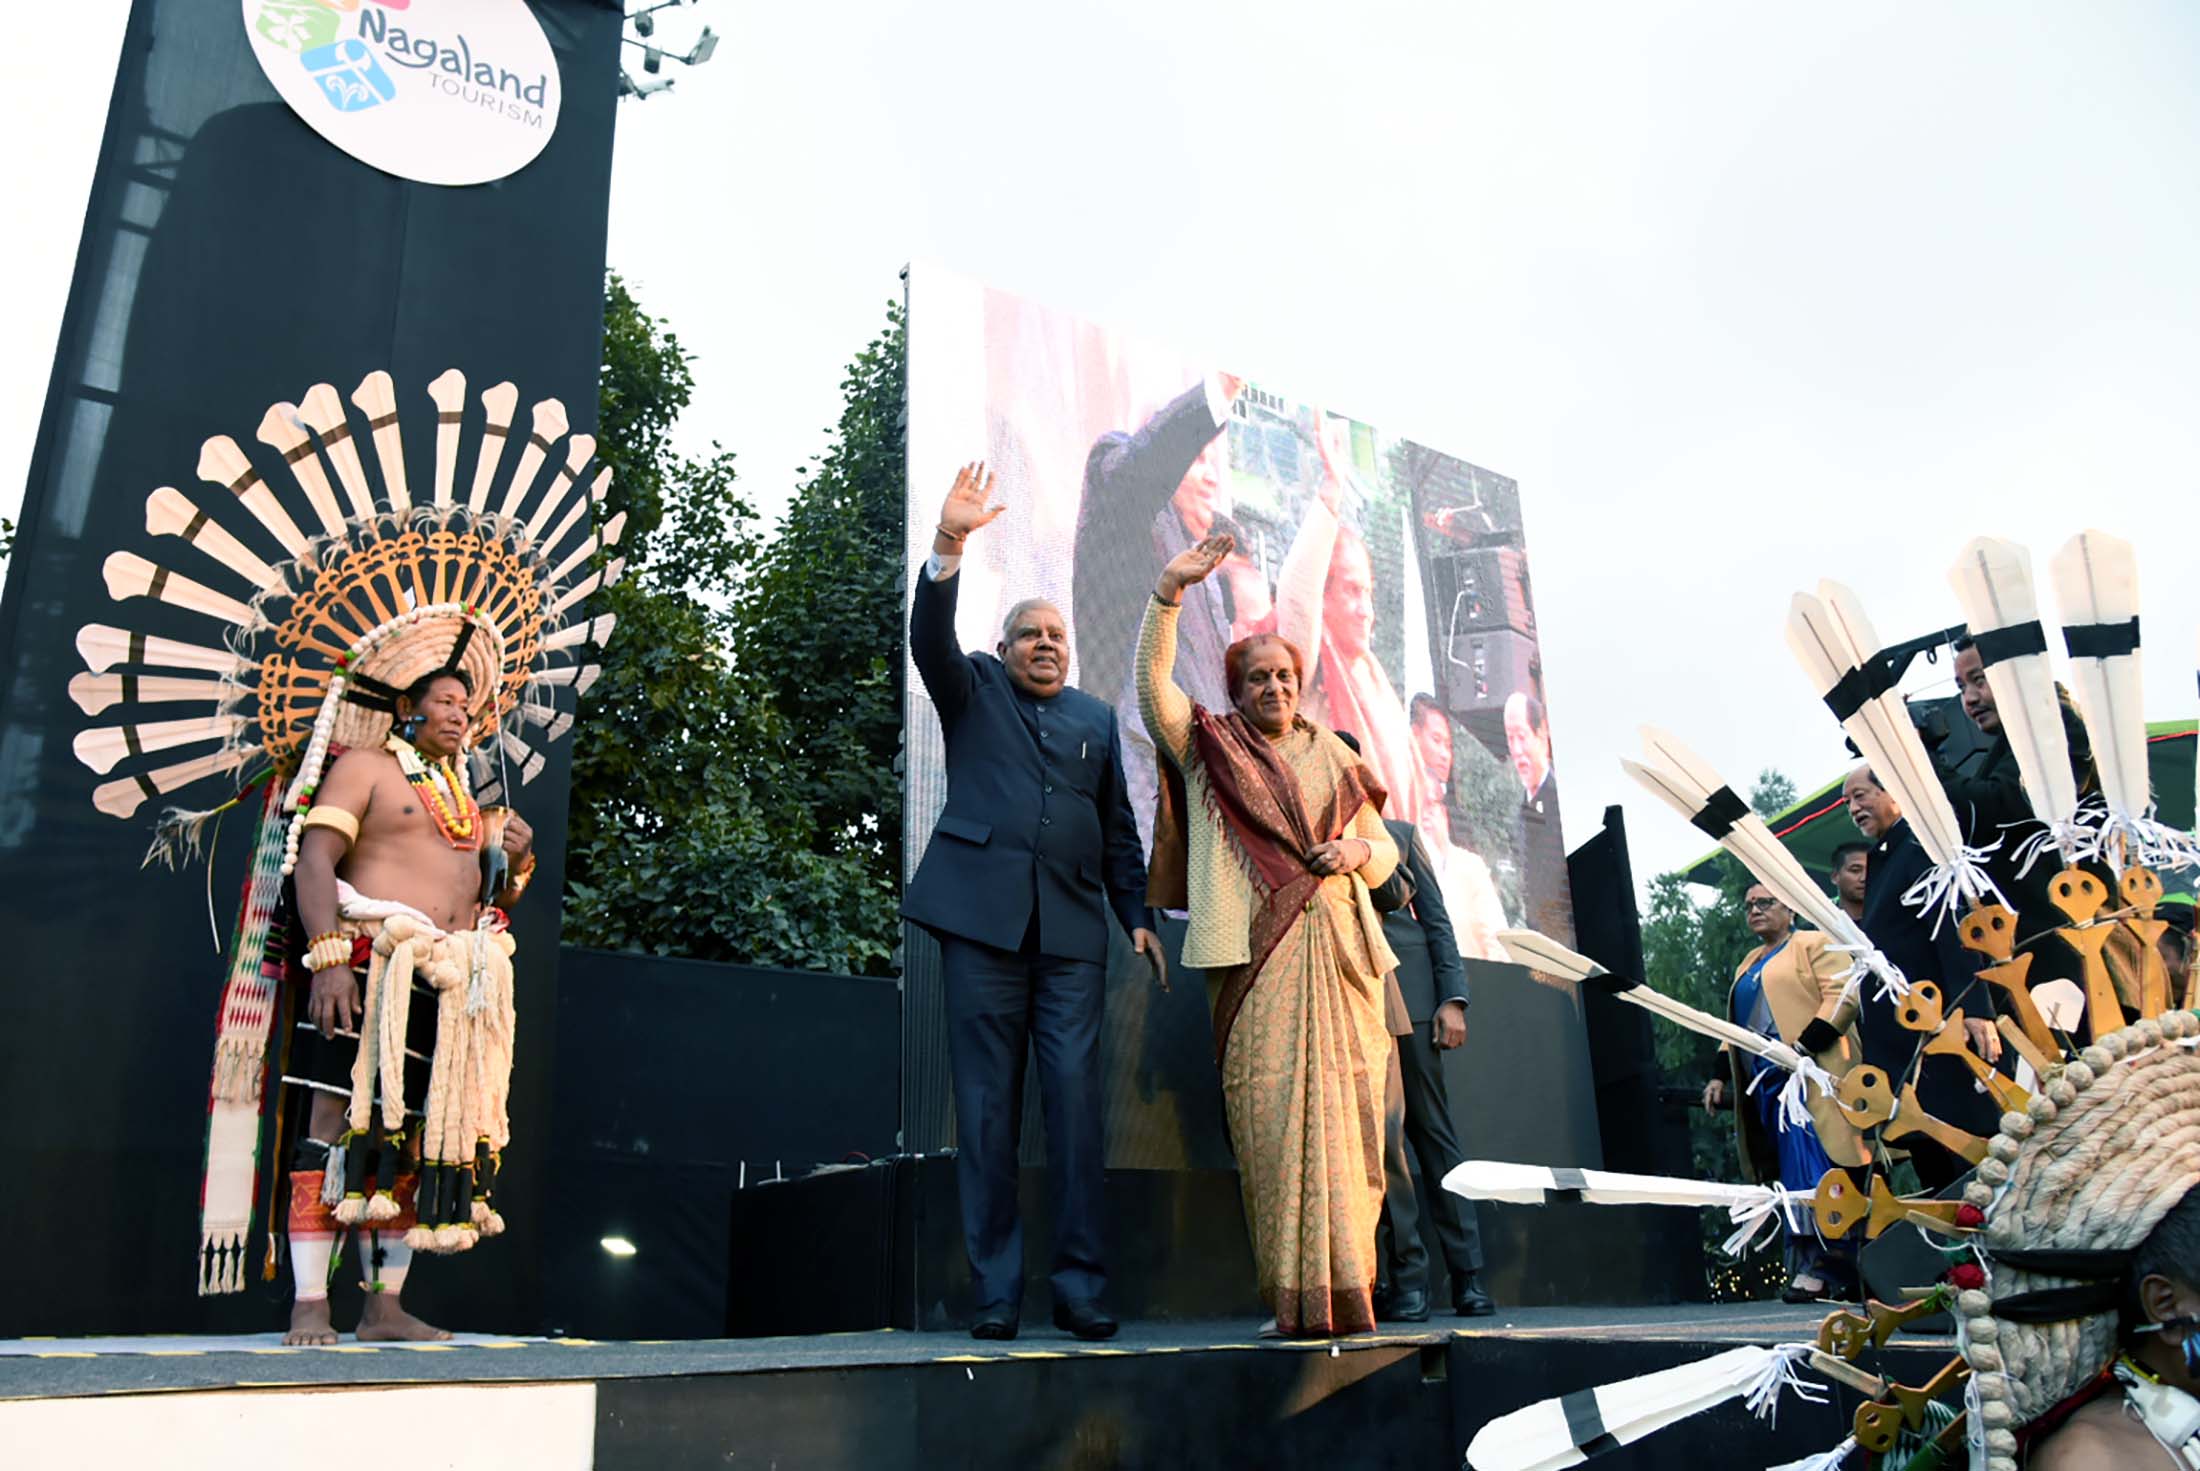 1 दिसंबर, 2022 को कोहिमा के निकट नागा हेरिटेज विलेज, किसामा में हॉर्नबिल फेस्टिवल 2022 के 23वें संस्करण के उद्घाटन अवसर पर भारत के उपराष्ट्रपति श्री जगदीप धनखड़ और उनकी धर्मपत्नी डॉ. सुदेश धनखड़।